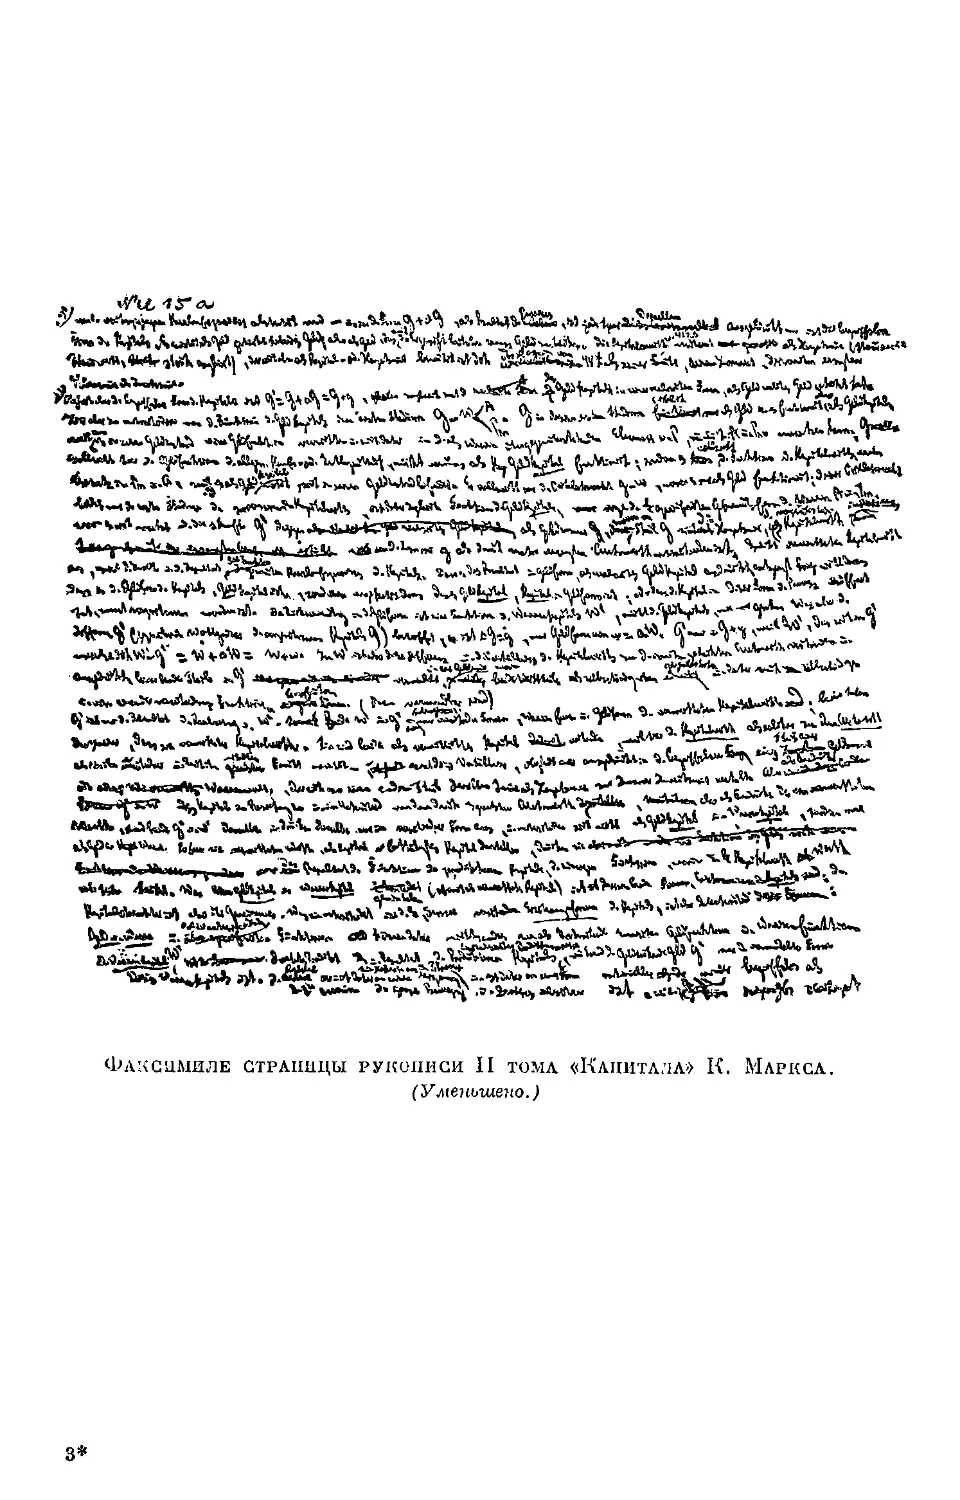 Факсимиле страницы рукописи II тома «Капитала» К. Маркса.